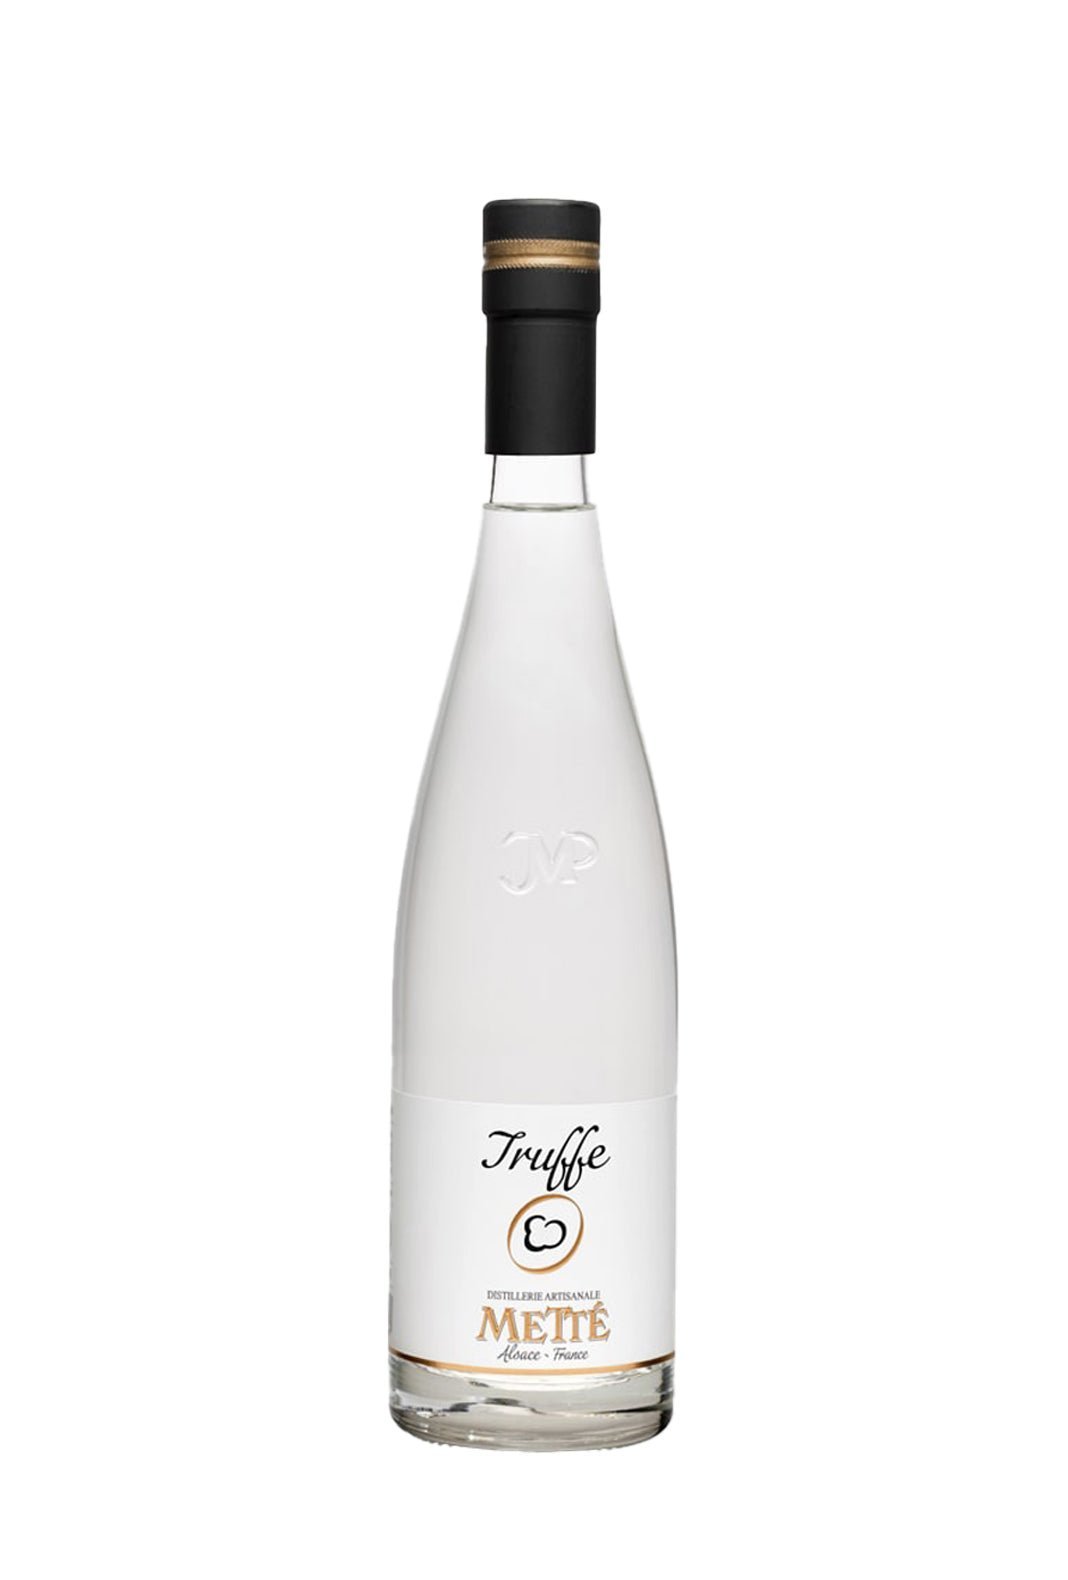 Mette Truffle Eau de Vie Fruit Spirit 45% 500ml - Eau de Vie - Liquor Wine Cave